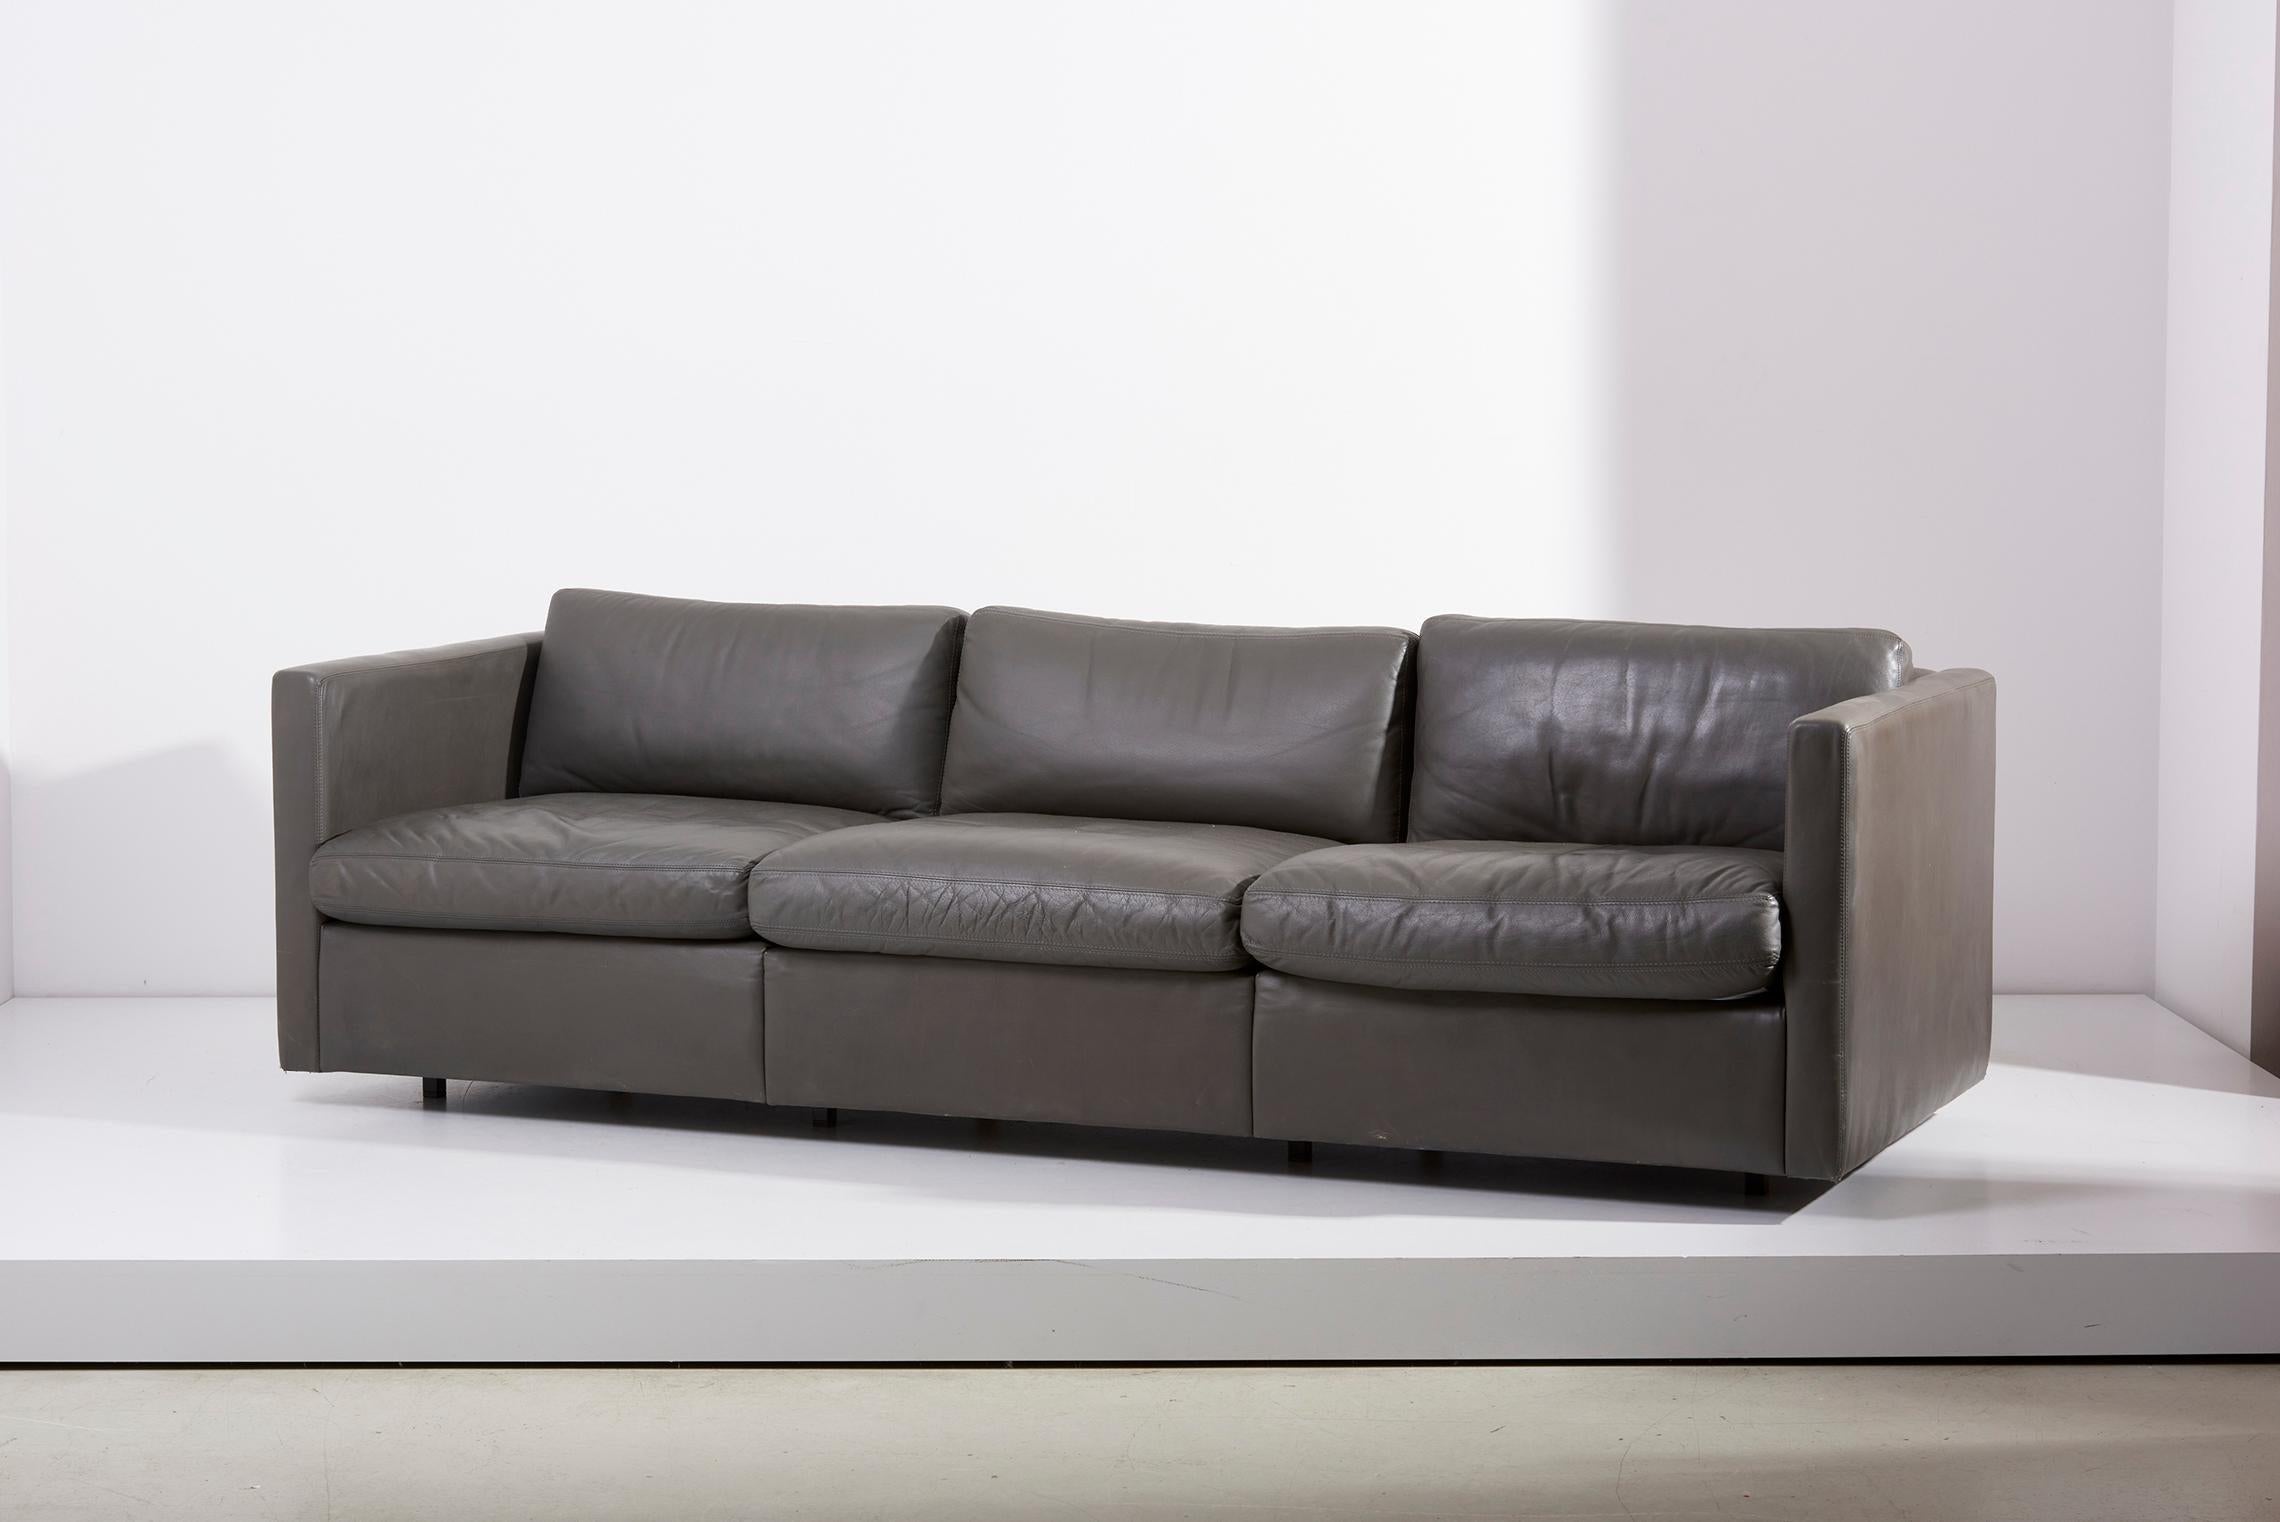 Un canapé original à trois places en cuir conçu en 1971 par Charles Pfister pour Knoll. Cuir Knoll original de couleur grise. Dimensions générales : 86